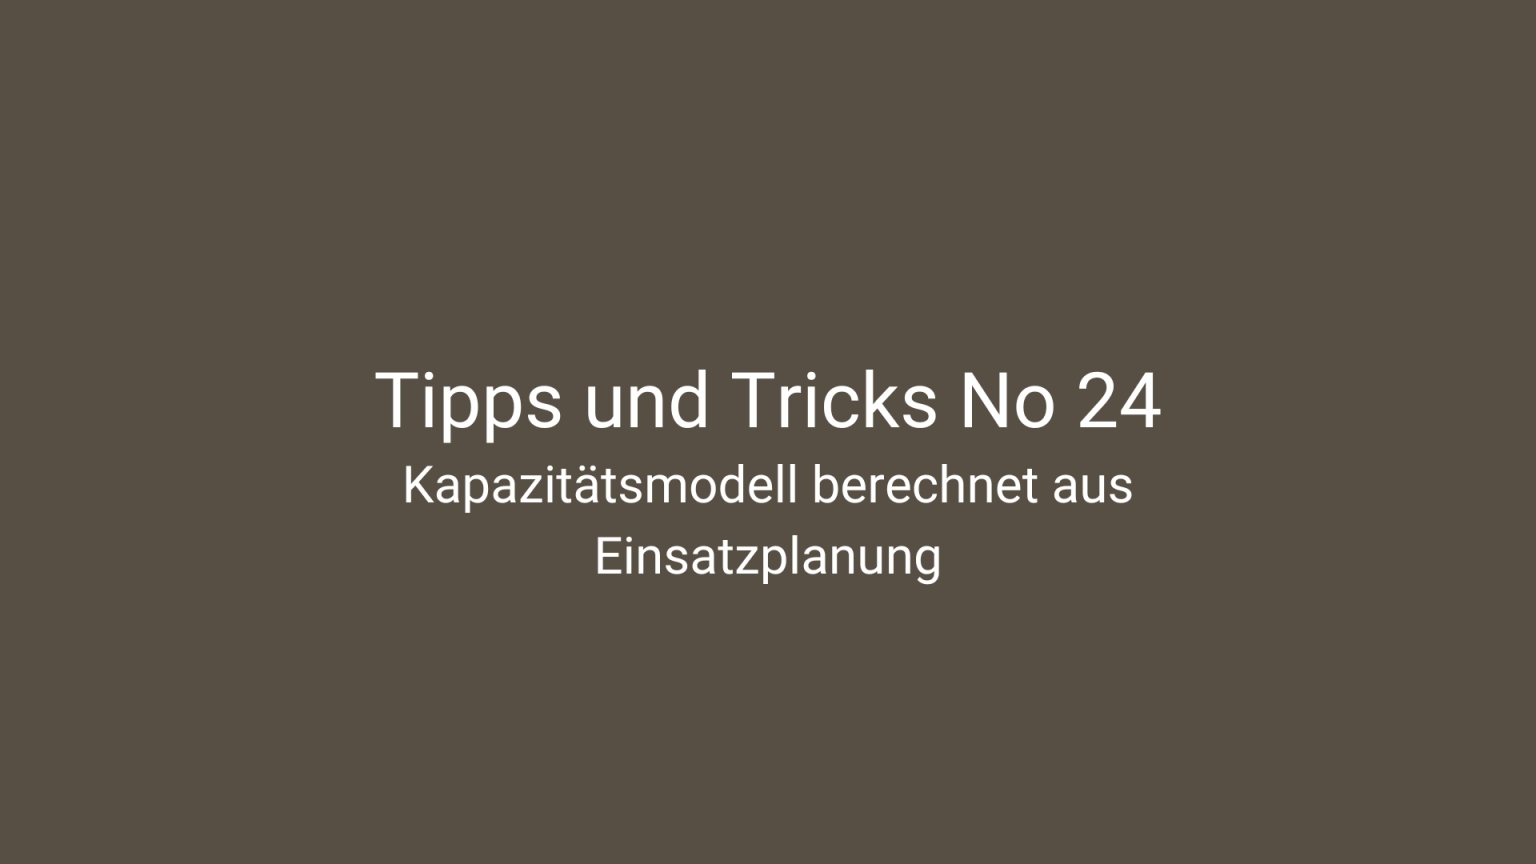 Tipps und Tricks 24 - einsatzplanbasiertes Kapazitätsmodell